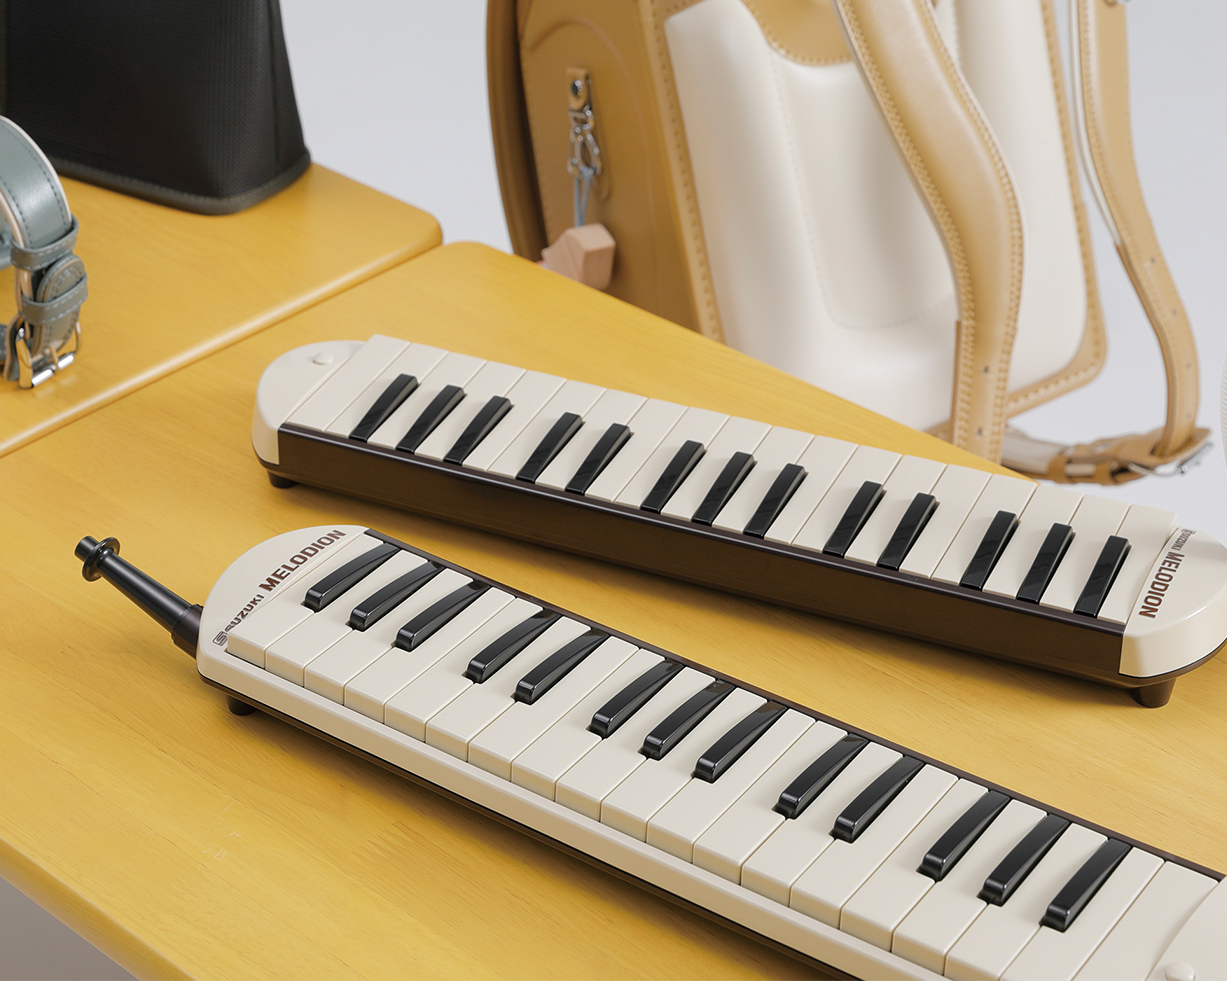 スズキ メロディオン FA-32 ピンク 鍵盤ハーモニカ - 鍵盤楽器